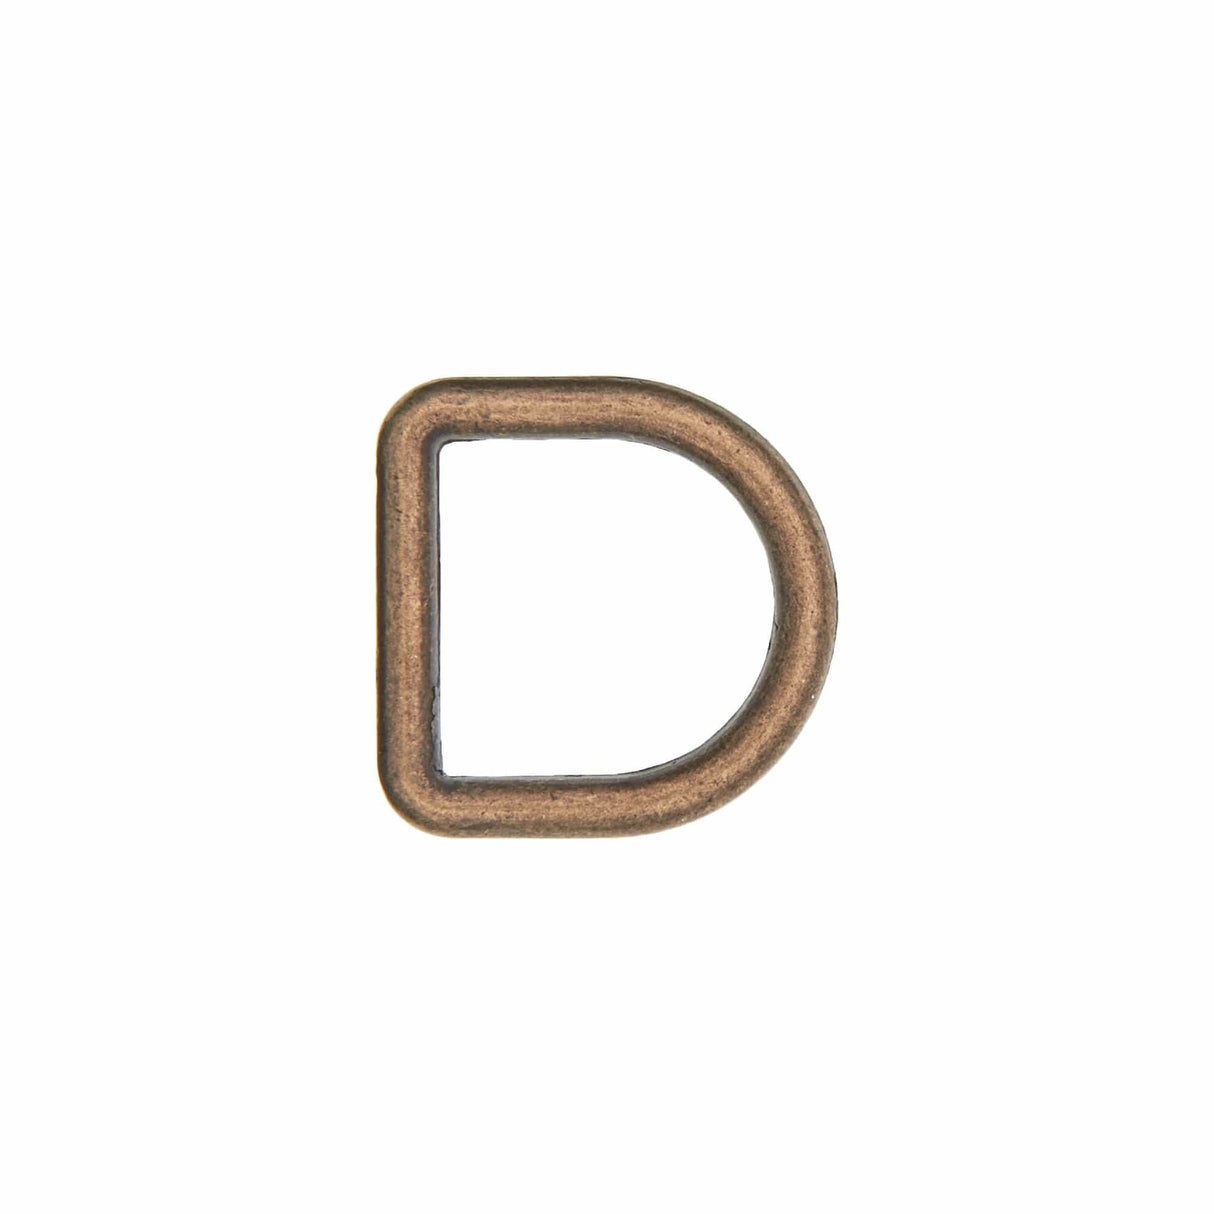 Ohio Travel Bag Rings & Slides 1/2" Antique Brass, Cast D-Ring, Zinc Alloy, #D-301-ANTB D-301-ANTB